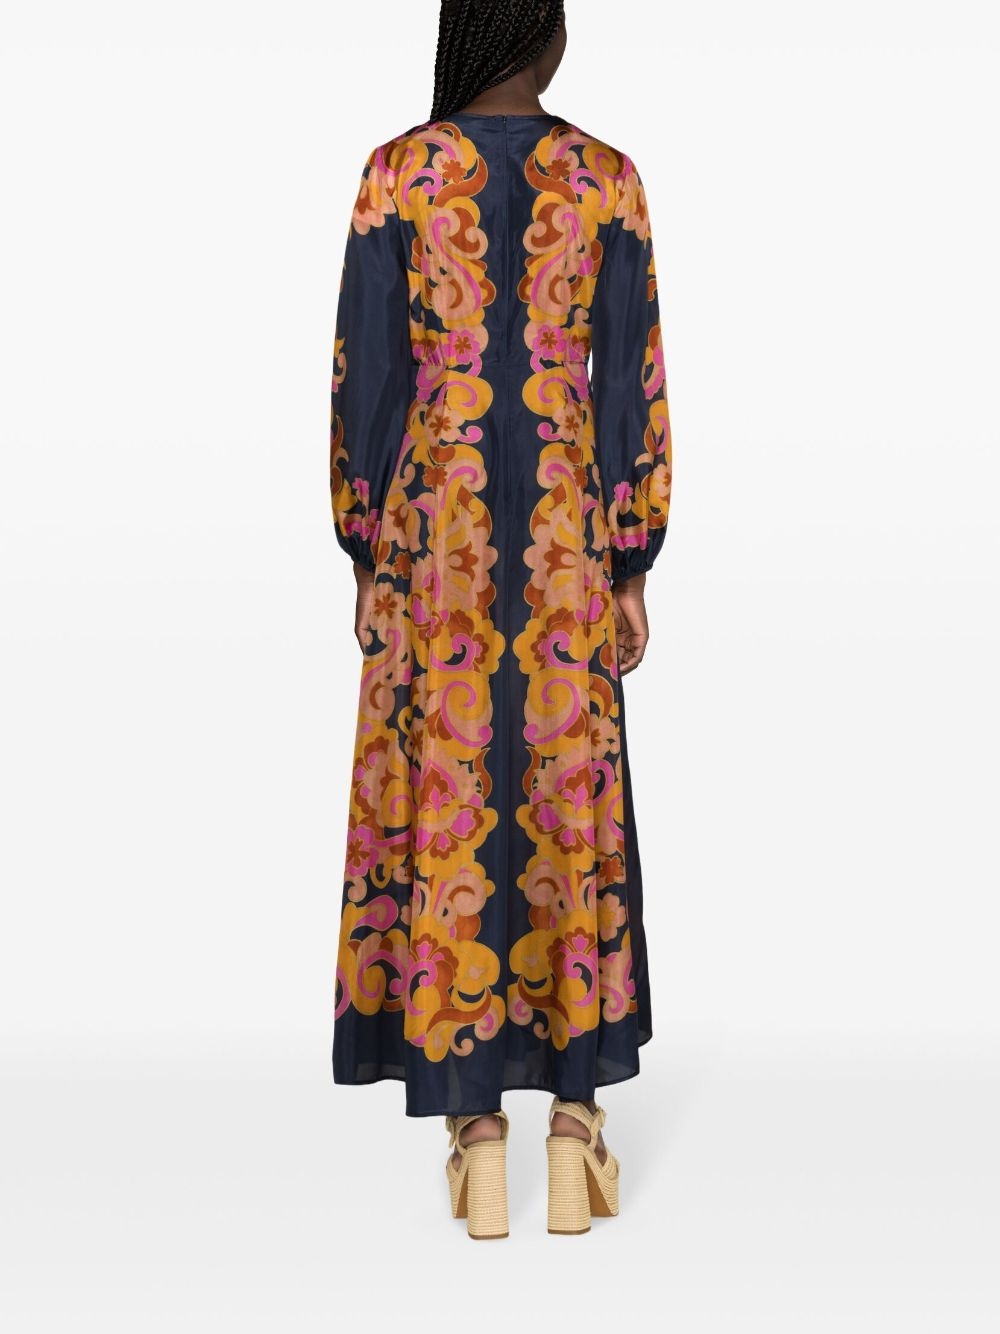 Acadian silk maxi dress - 4